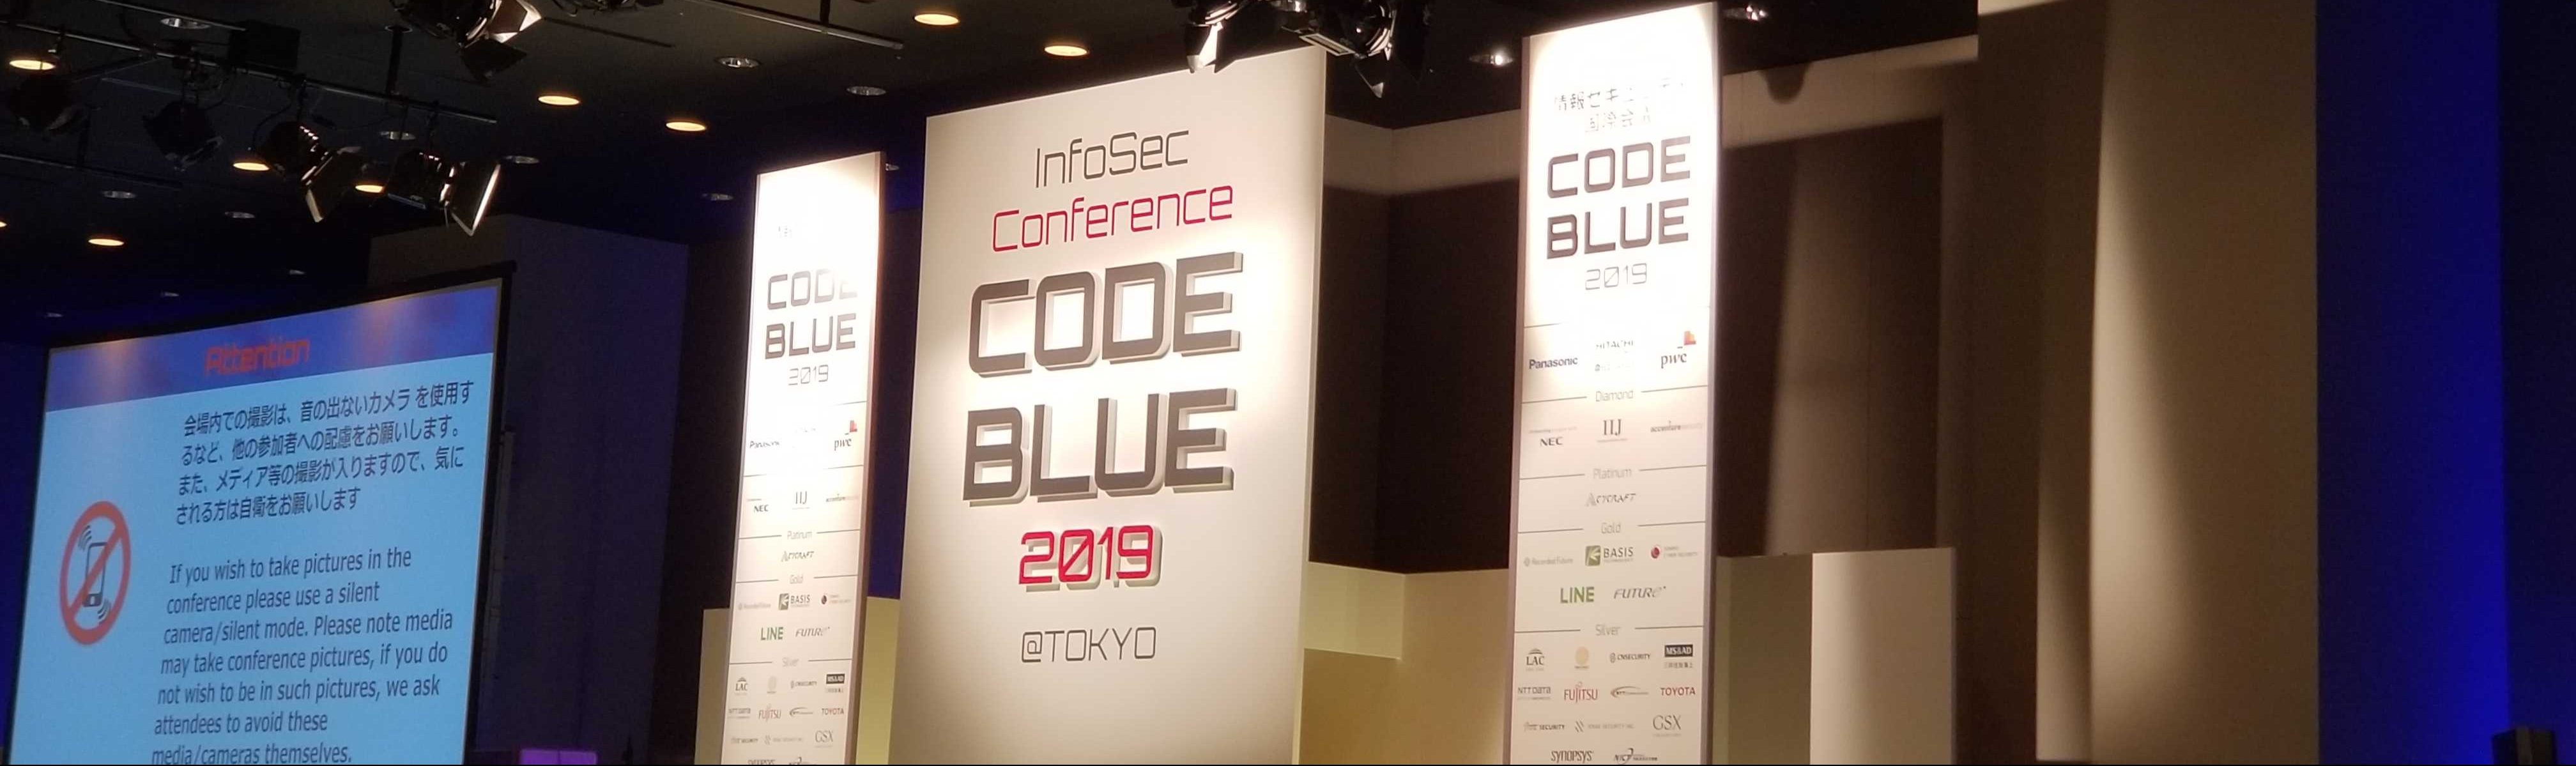 CODE BLUE 2019@Tokyoに学生スタッフとして参加しました